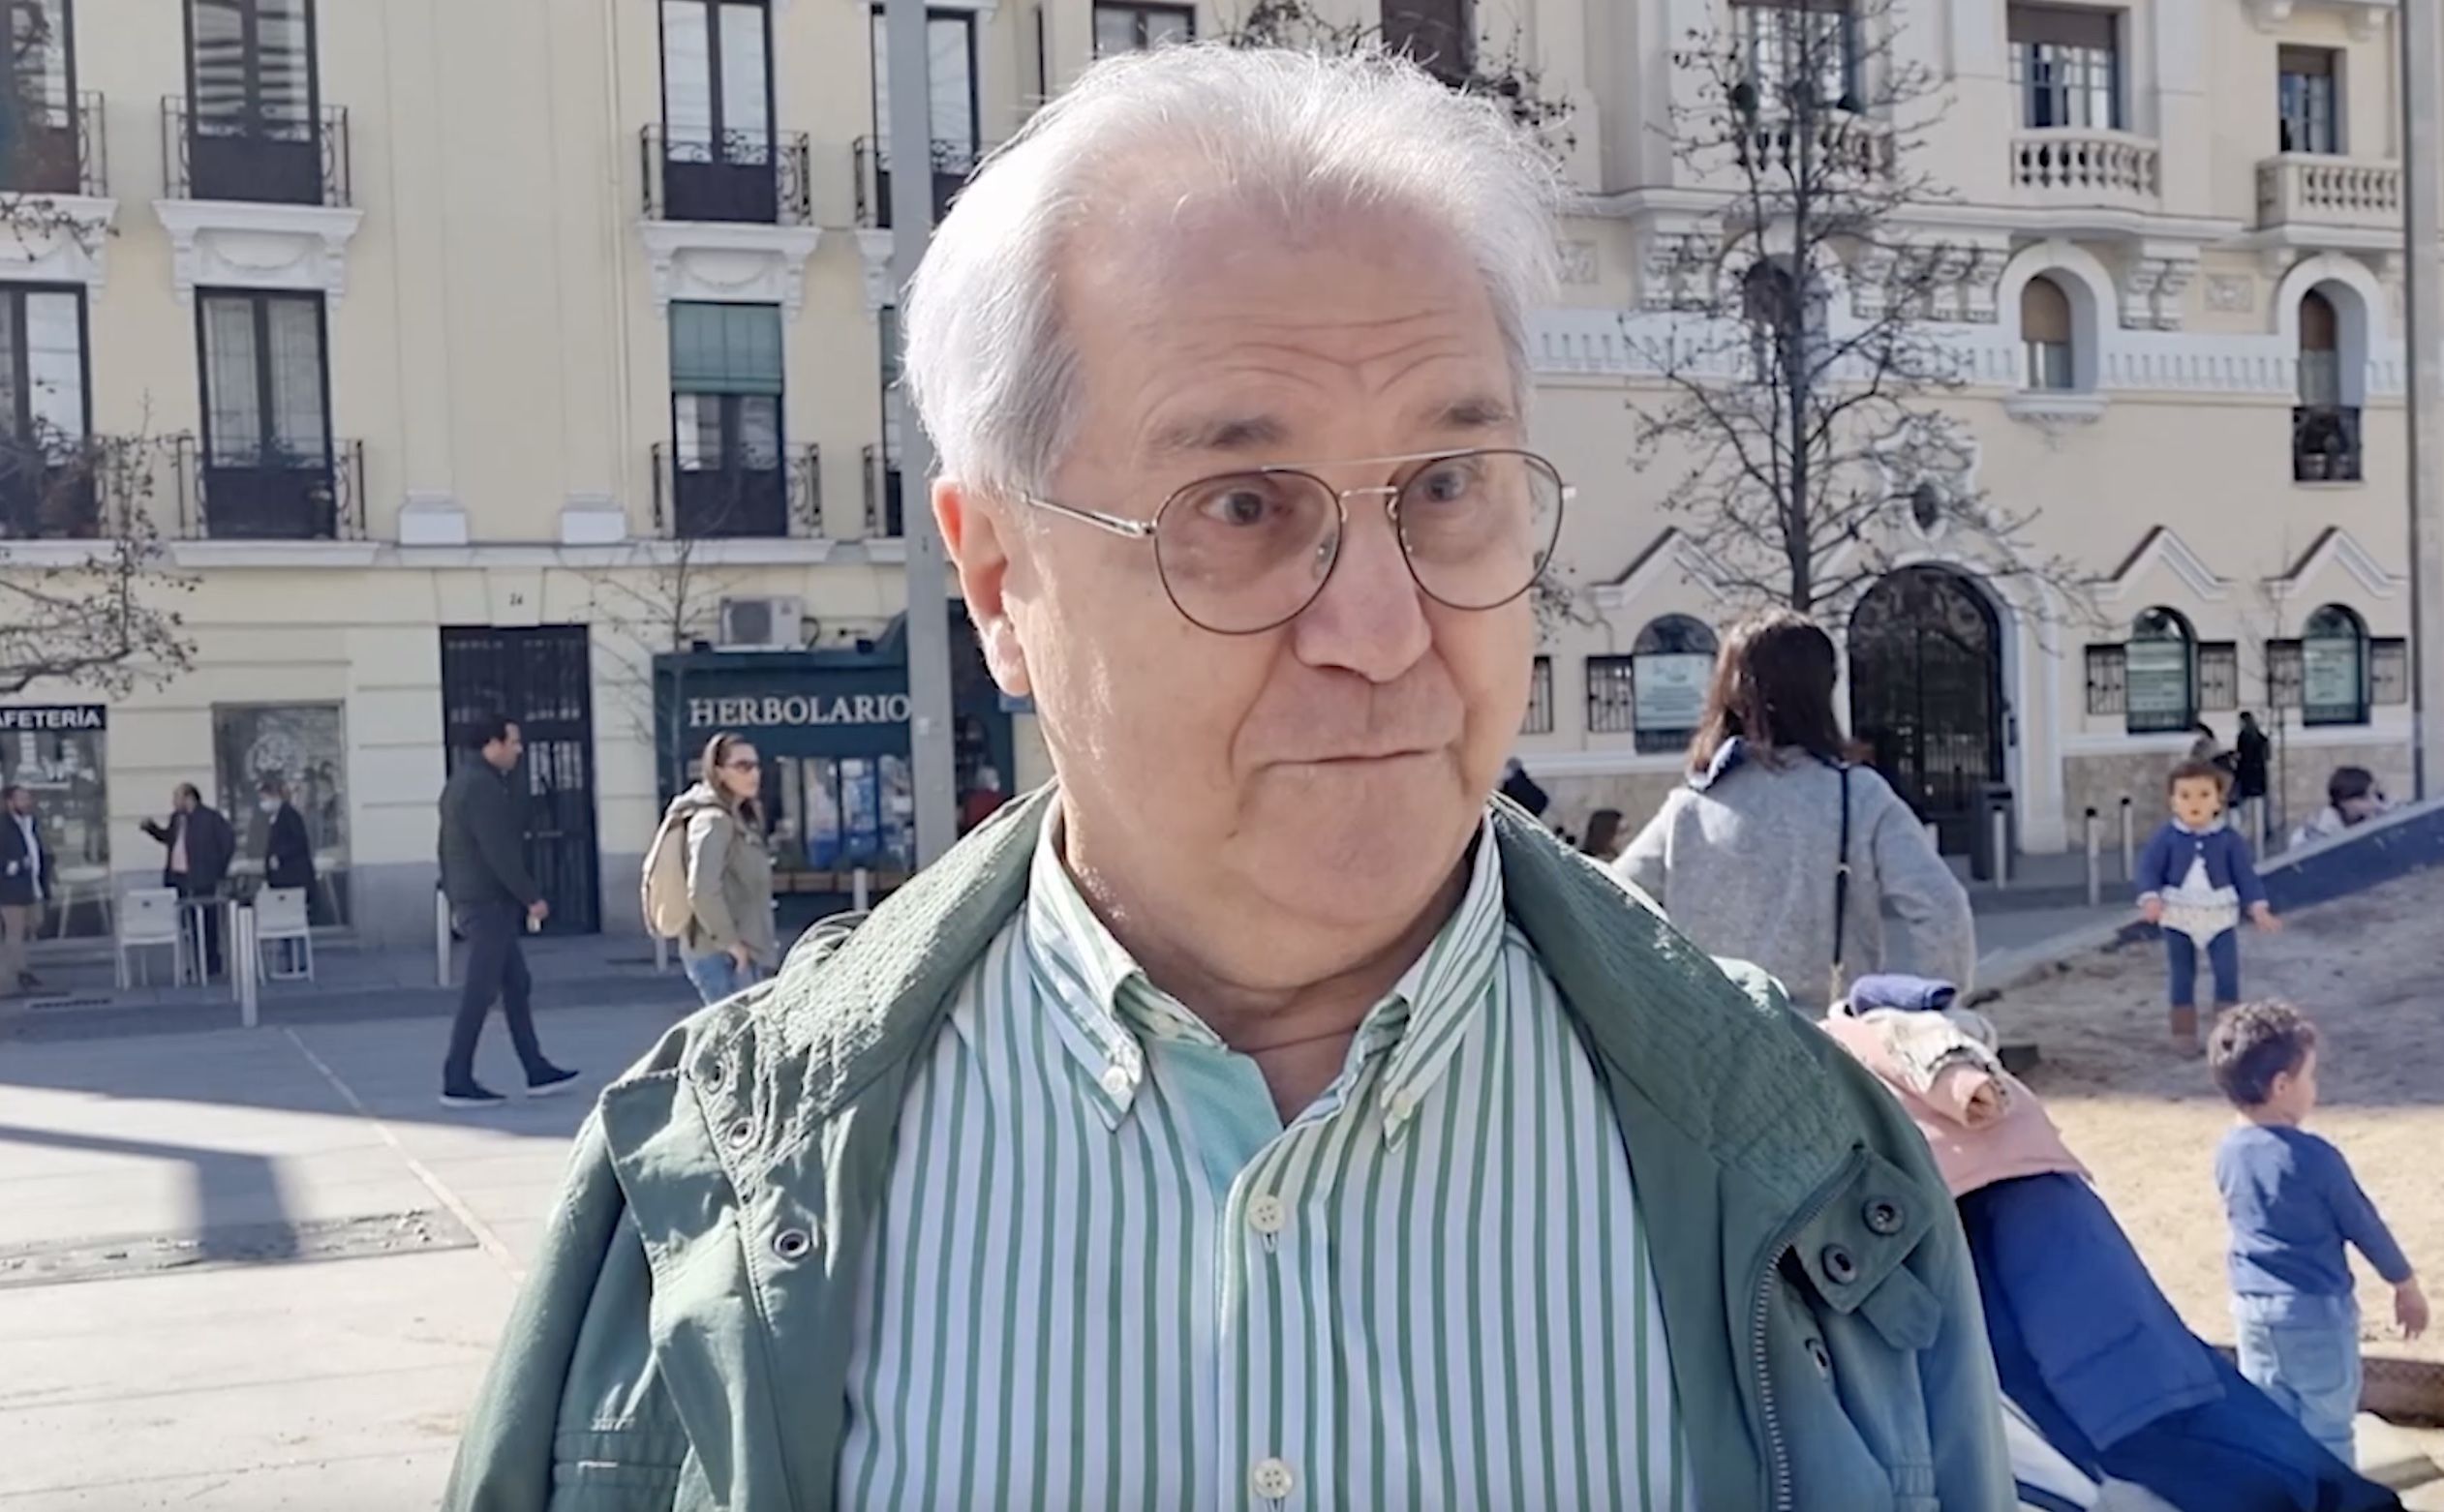 Los mayores españoles, sobre Ucrania: "No interesa que acabe en una Tercera Guerra Mundial"